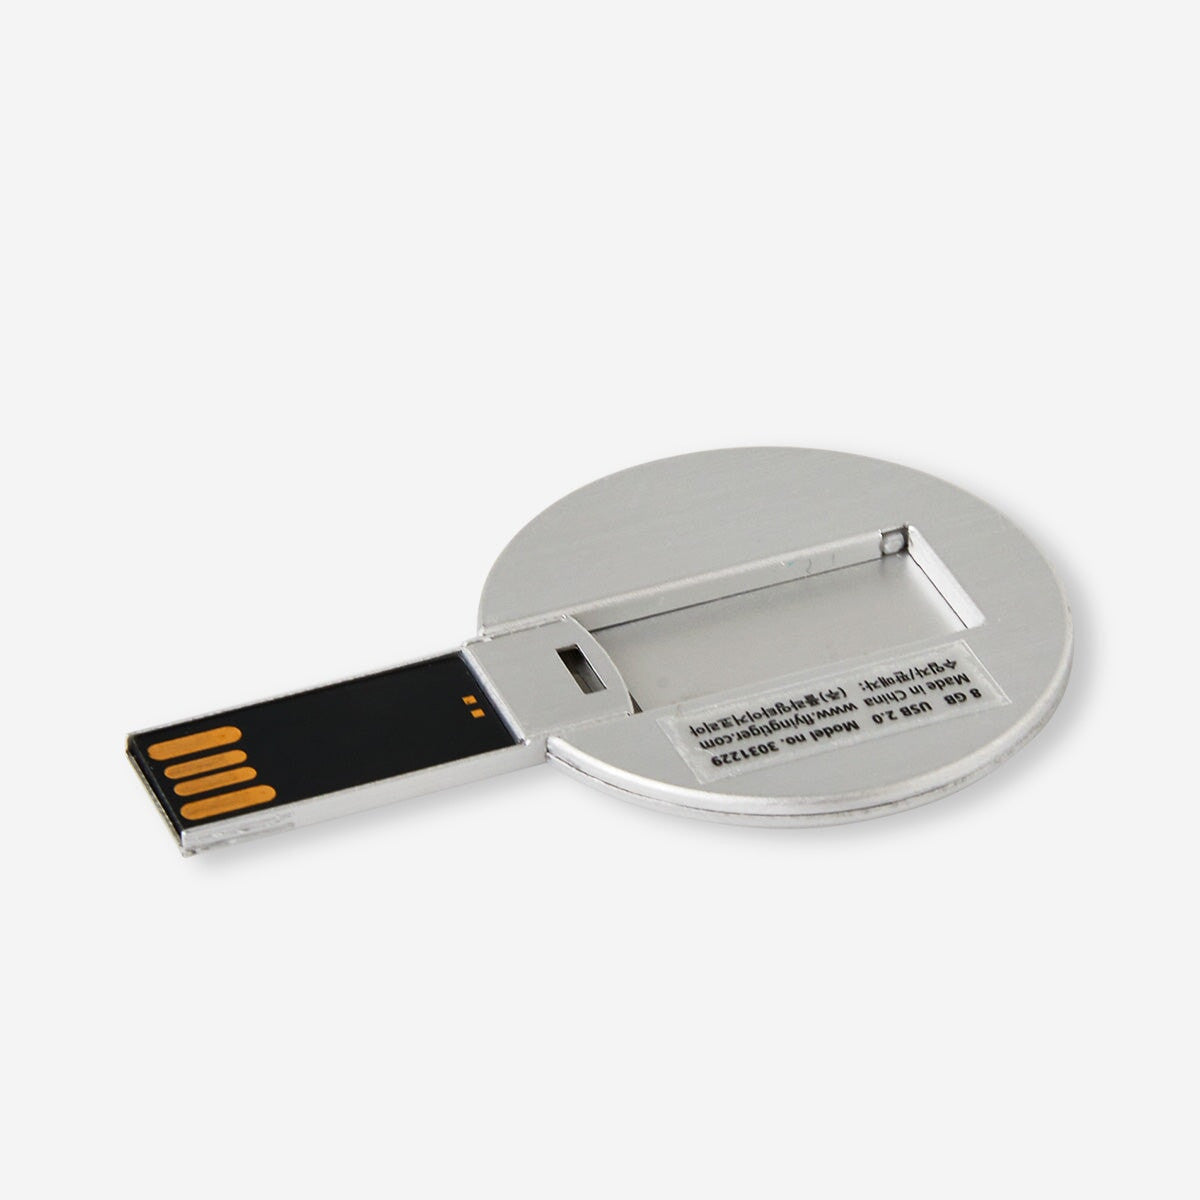 USB memory stick Media Flying Tiger Copenhagen 